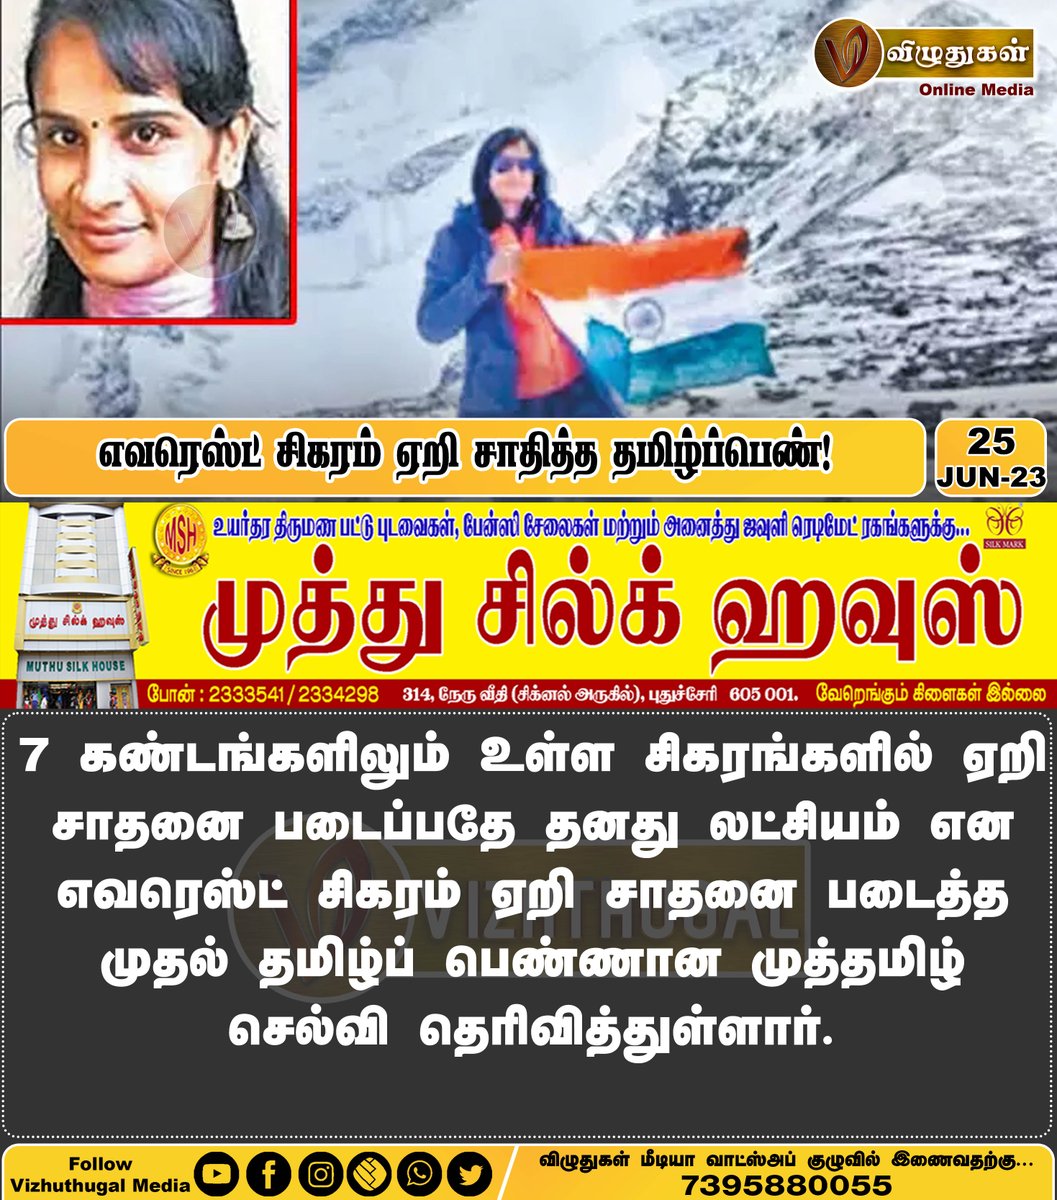 எவரெஸ்ட் சிகரம் ஏறி சாதித்த தமிழ்ப்பெண்!

#TamilNews #trekkingnepal #mounteverest #mounteveresttrek #Everest #MuthamilSelvi #vizhuthugalnews